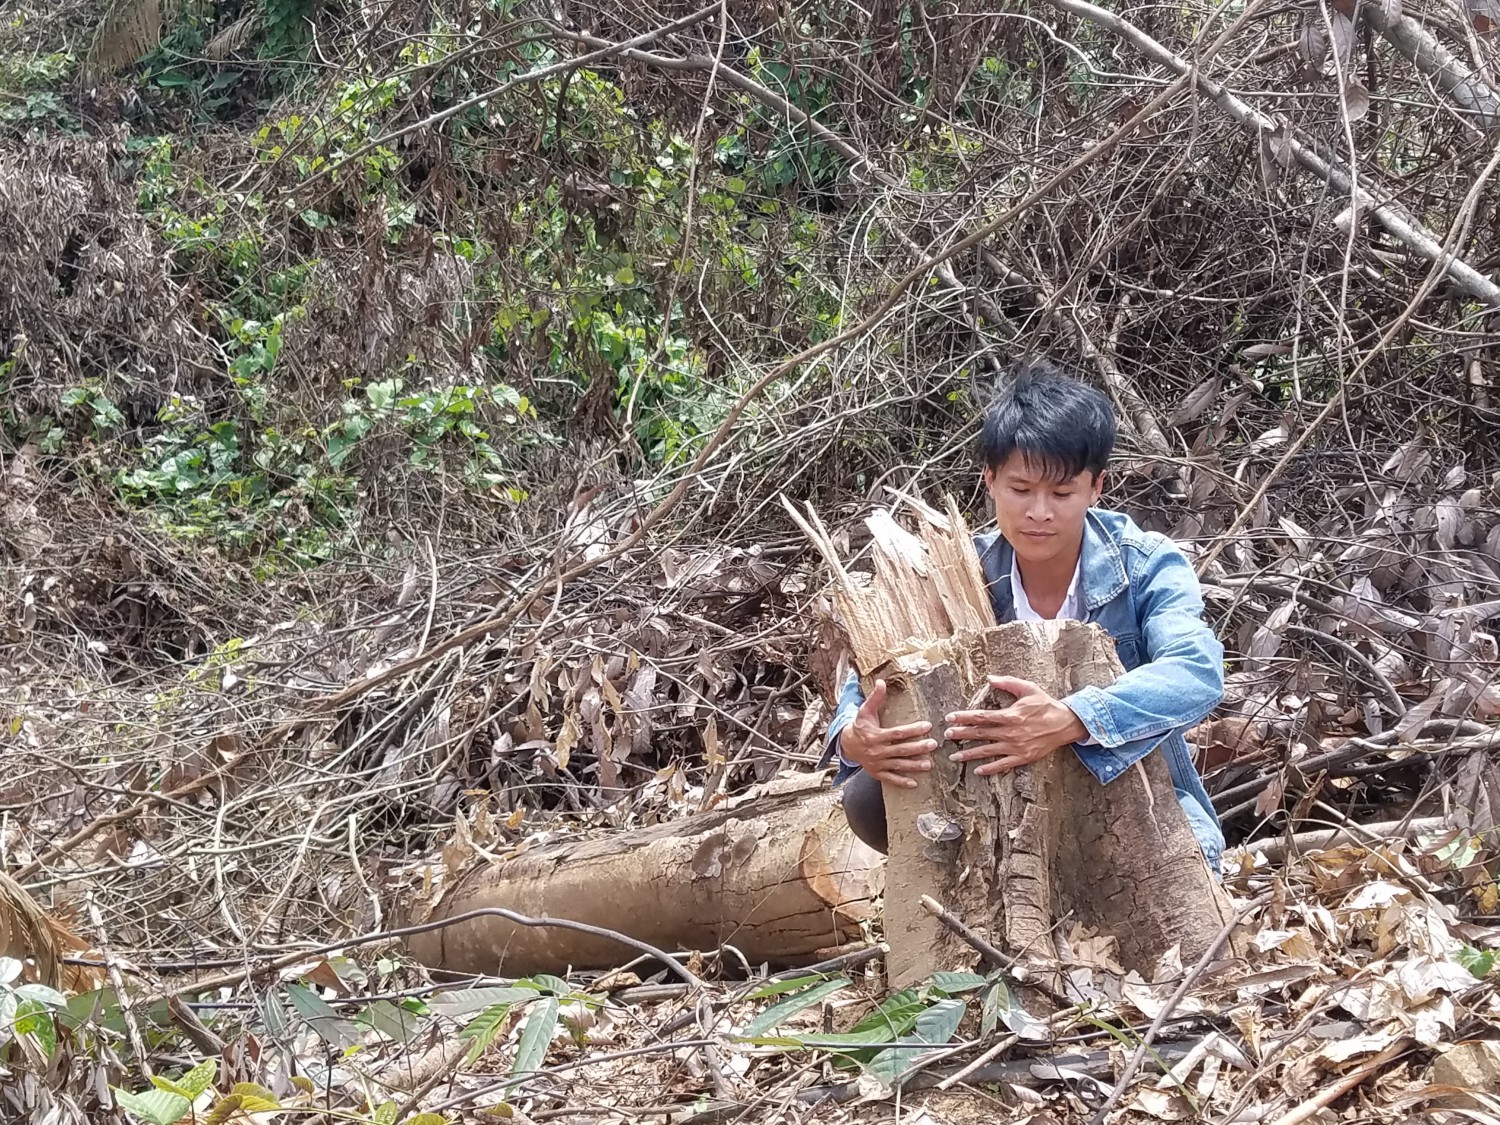 Hơn 2 hecta rừng vùng đệm VQG Phong Nha - Kẻ Bàng bị đốn hạ.